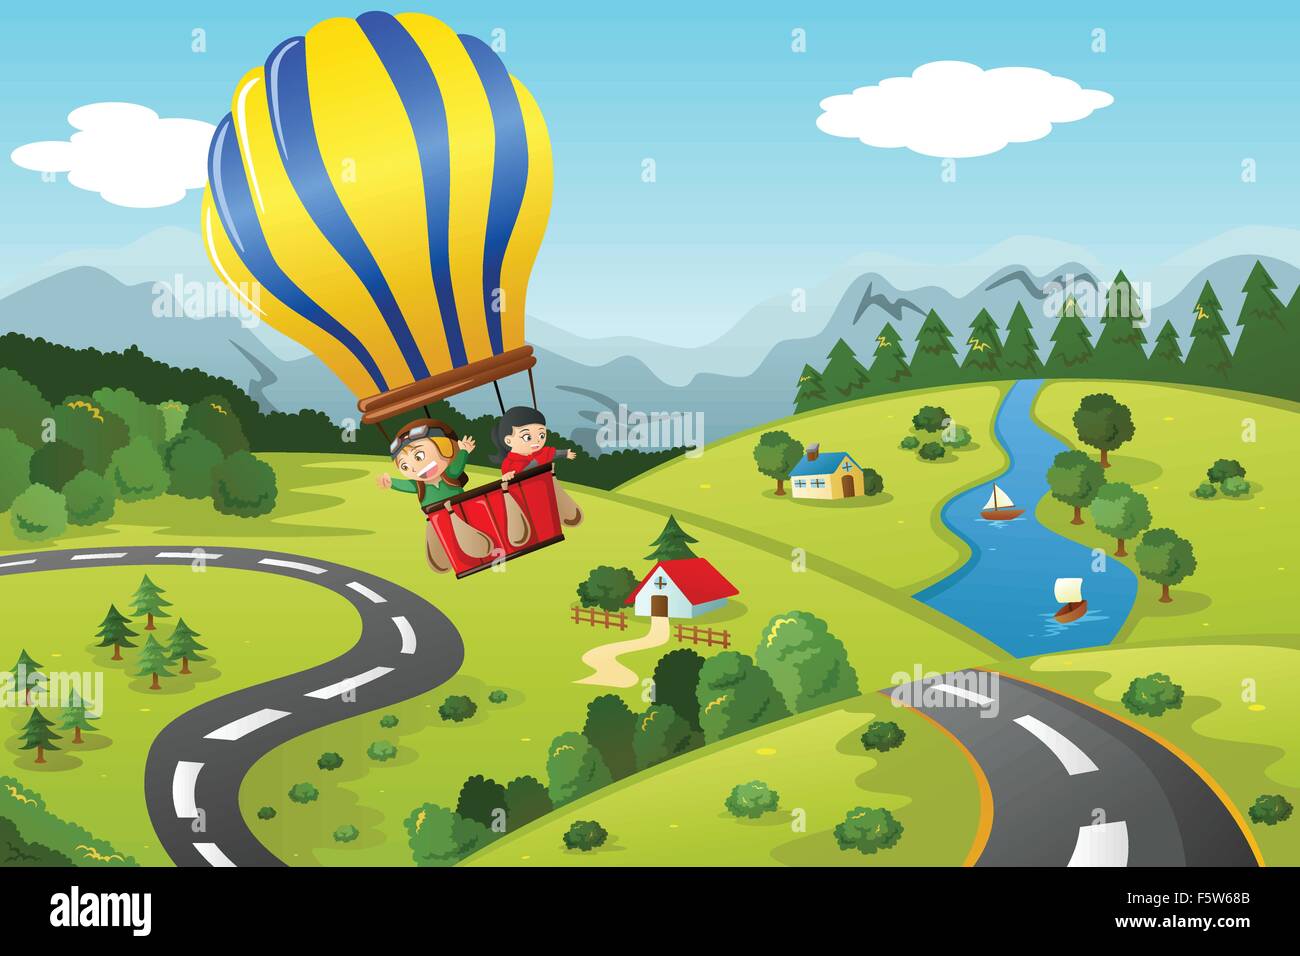 Eine Vektor-Illustration von niedlichen Kinder reiten einen Heißluftballon Stock Vektor